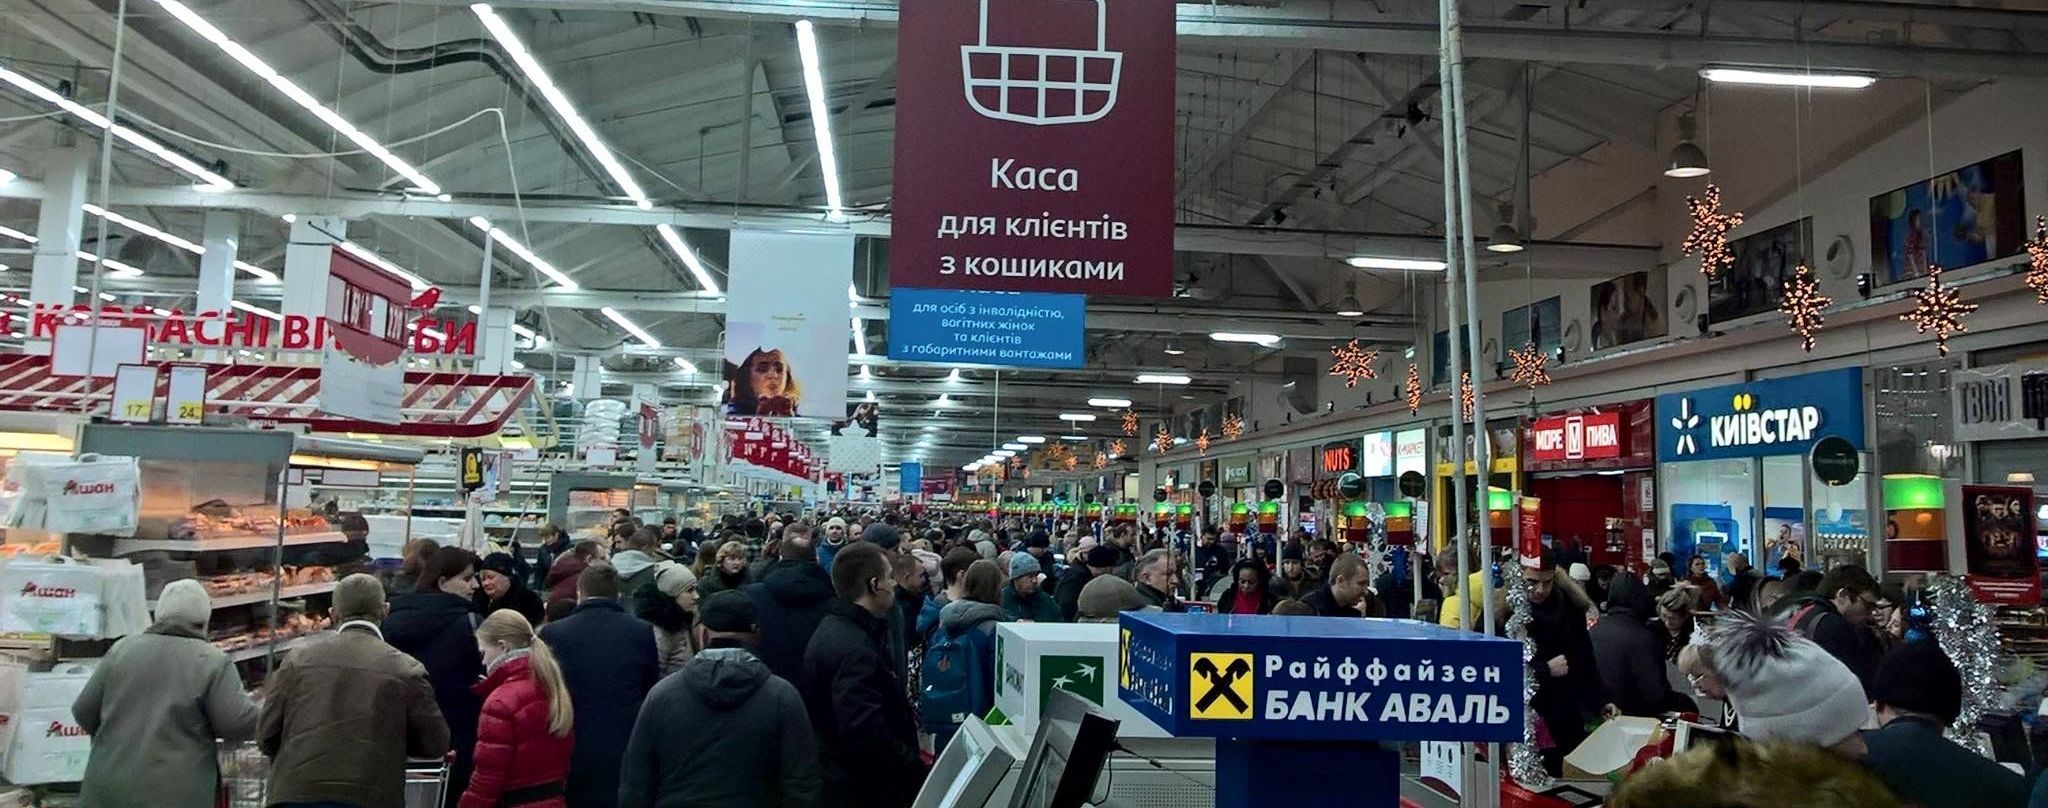 "Хроники зубожиння". Очевидцы публикуют фото масштабных очередей в киевских супермаркетах